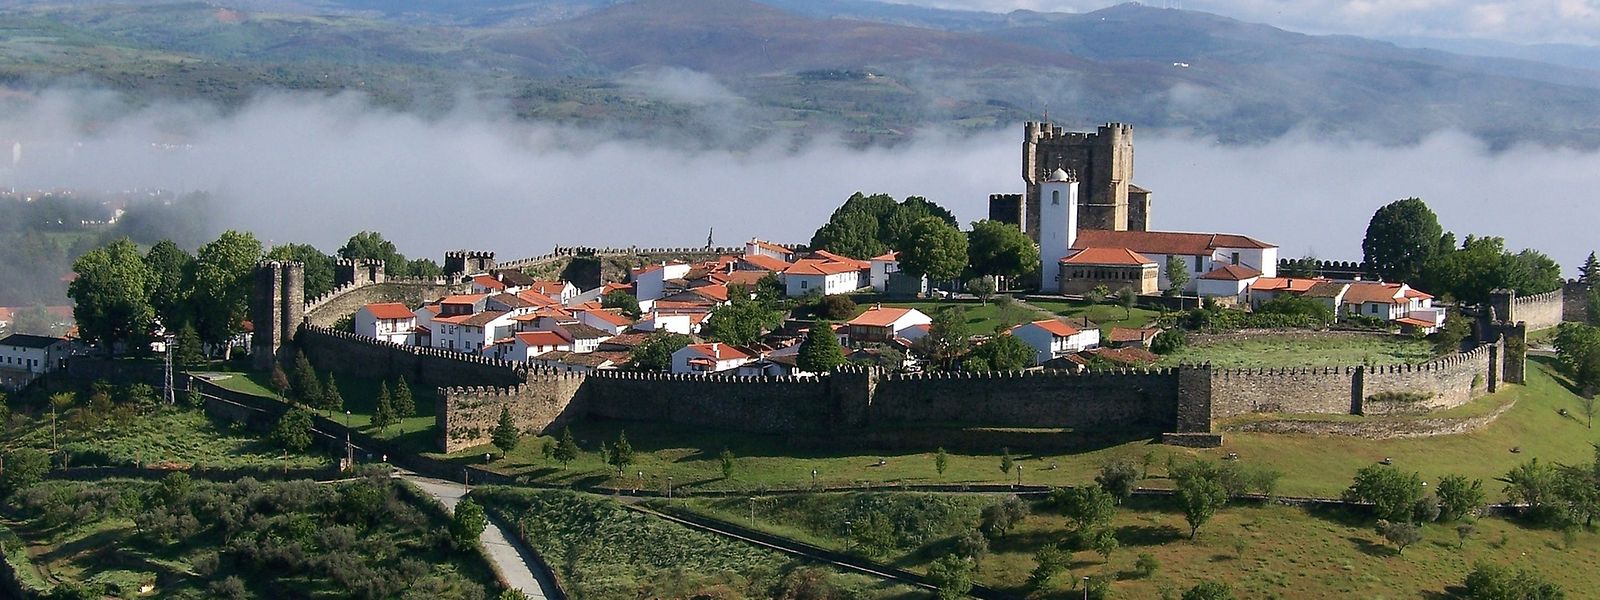 O monumento medieval hoje leiloado situa-se junto ao Castelo de Bragança.